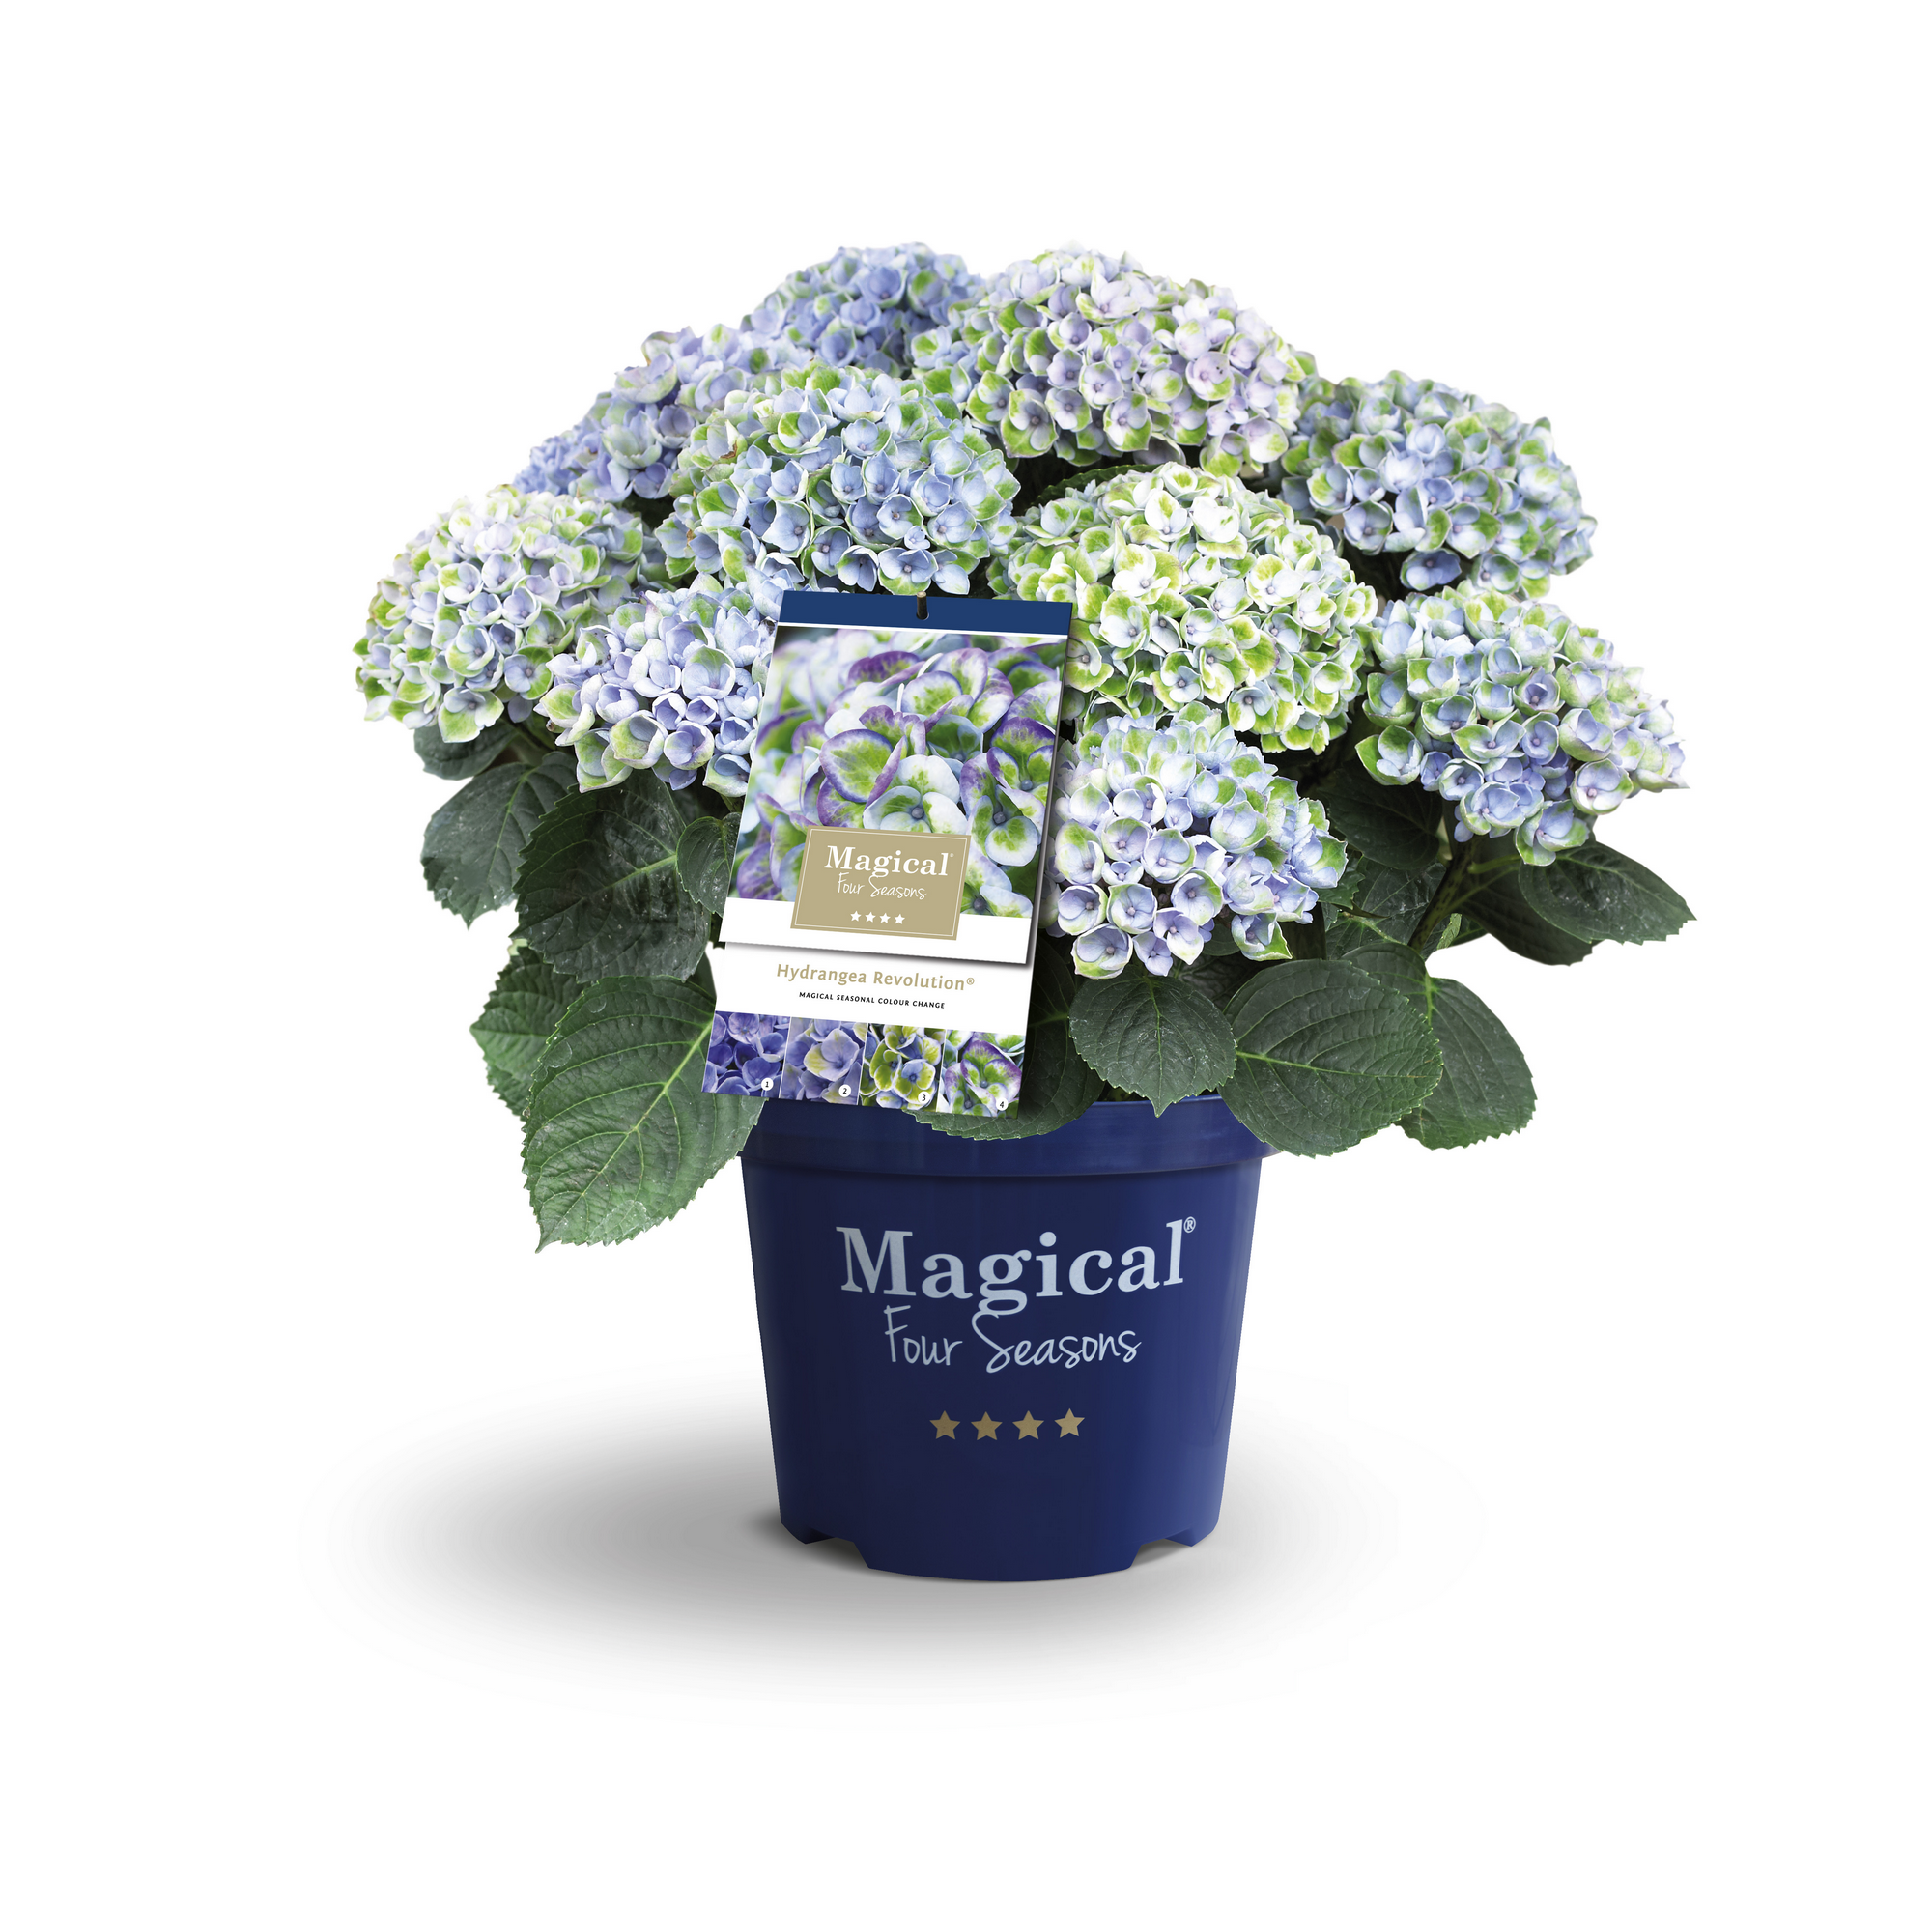 Hortensie 'Magical Revolution® blau', Topf Ø 23 cm + product picture